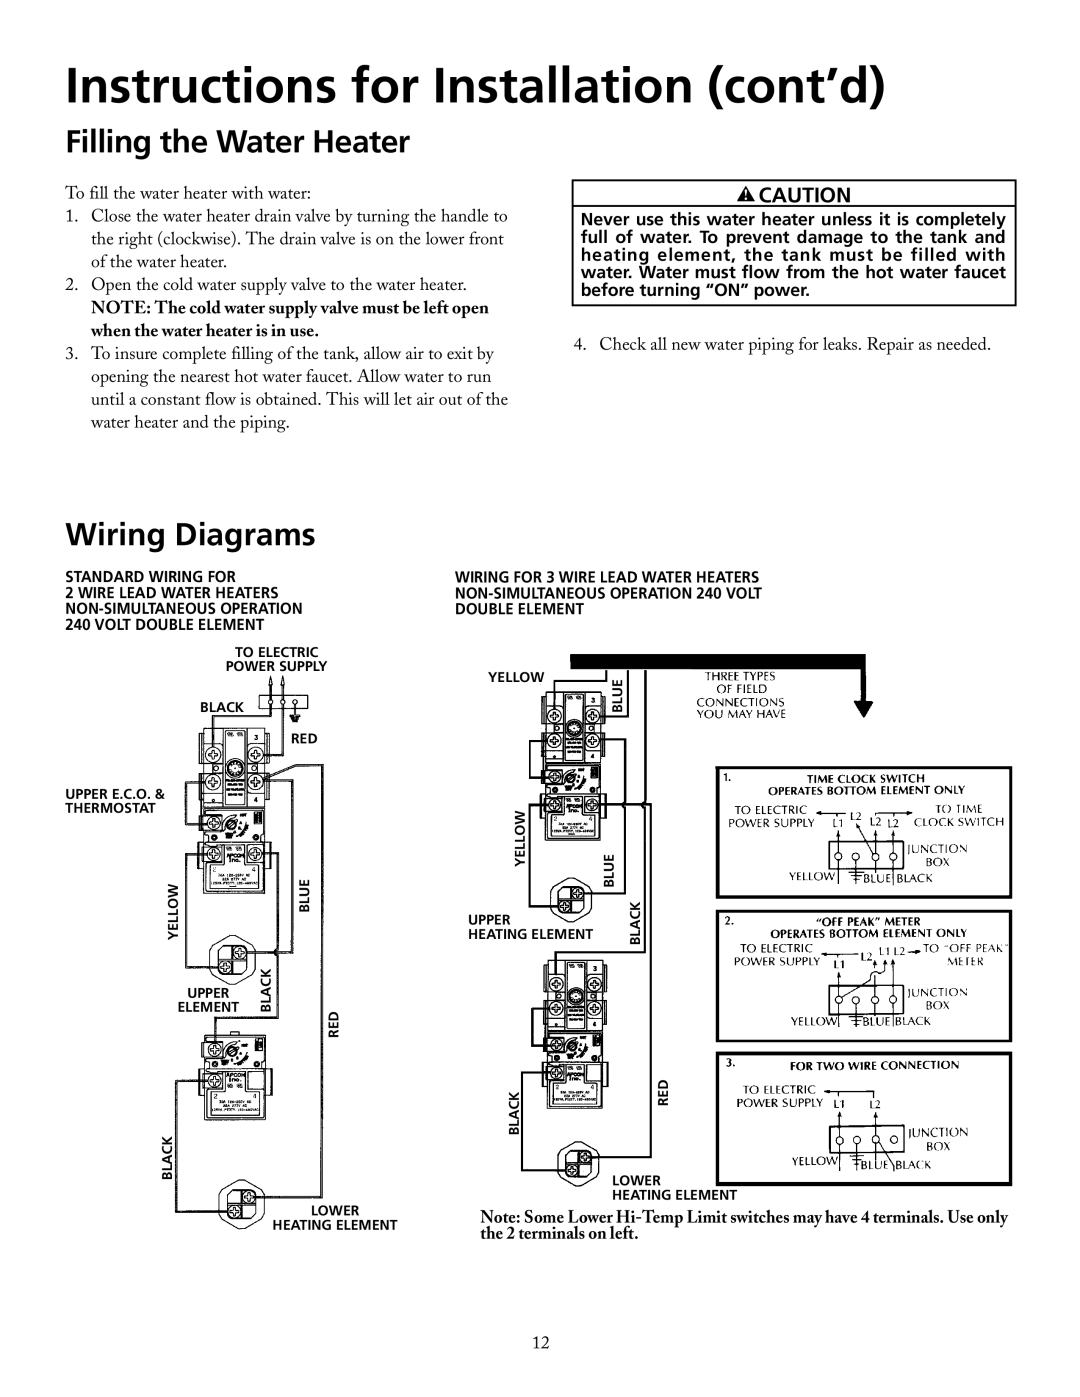 Maytag HRX82DERT, HRX30DERT, HRX52DERT manual Filling the Water Heater, Wiring Diagrams, Instructions for Installation cont’d 